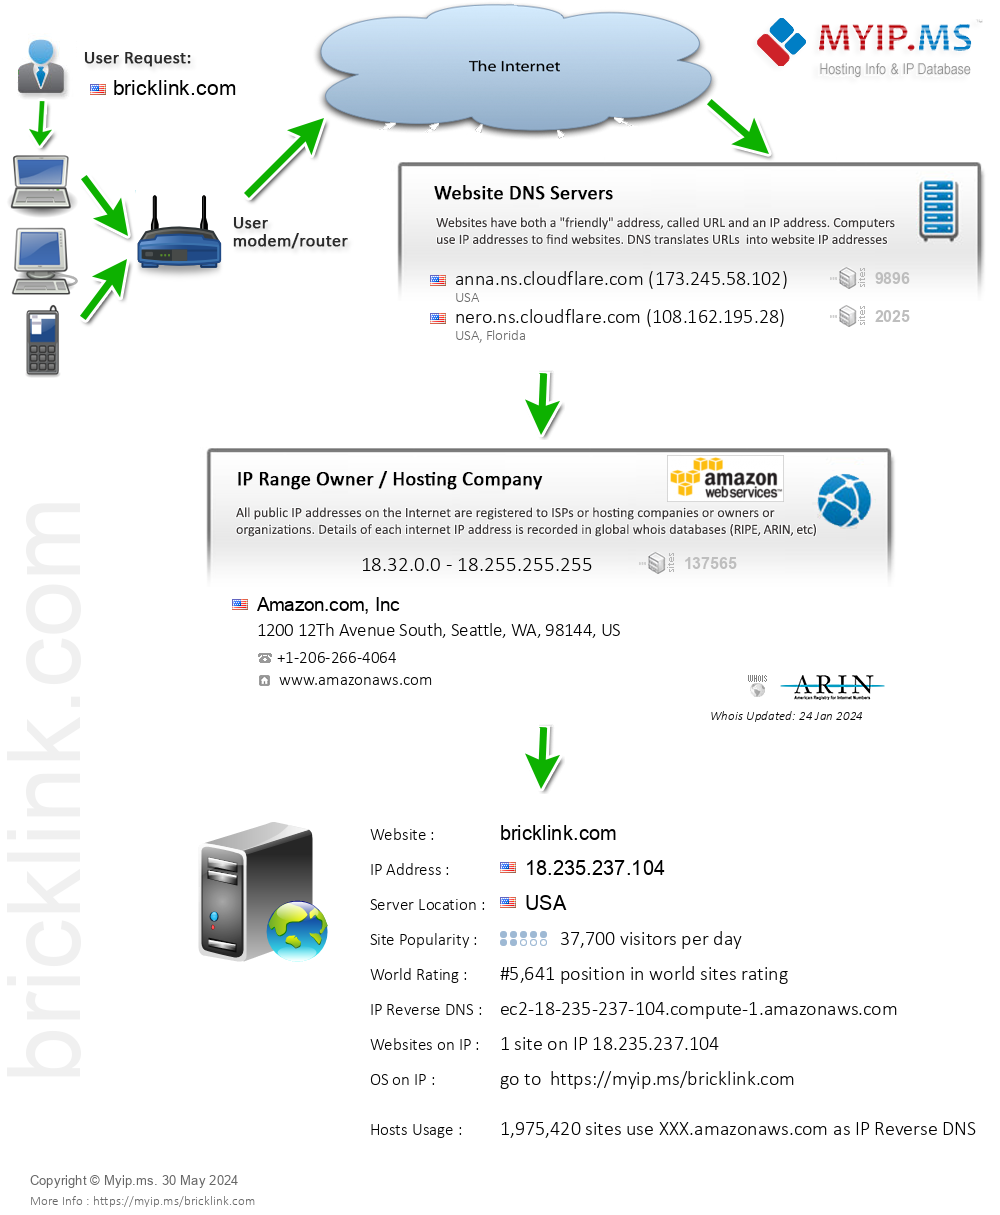 Bricklink.com - Website Hosting Visual IP Diagram